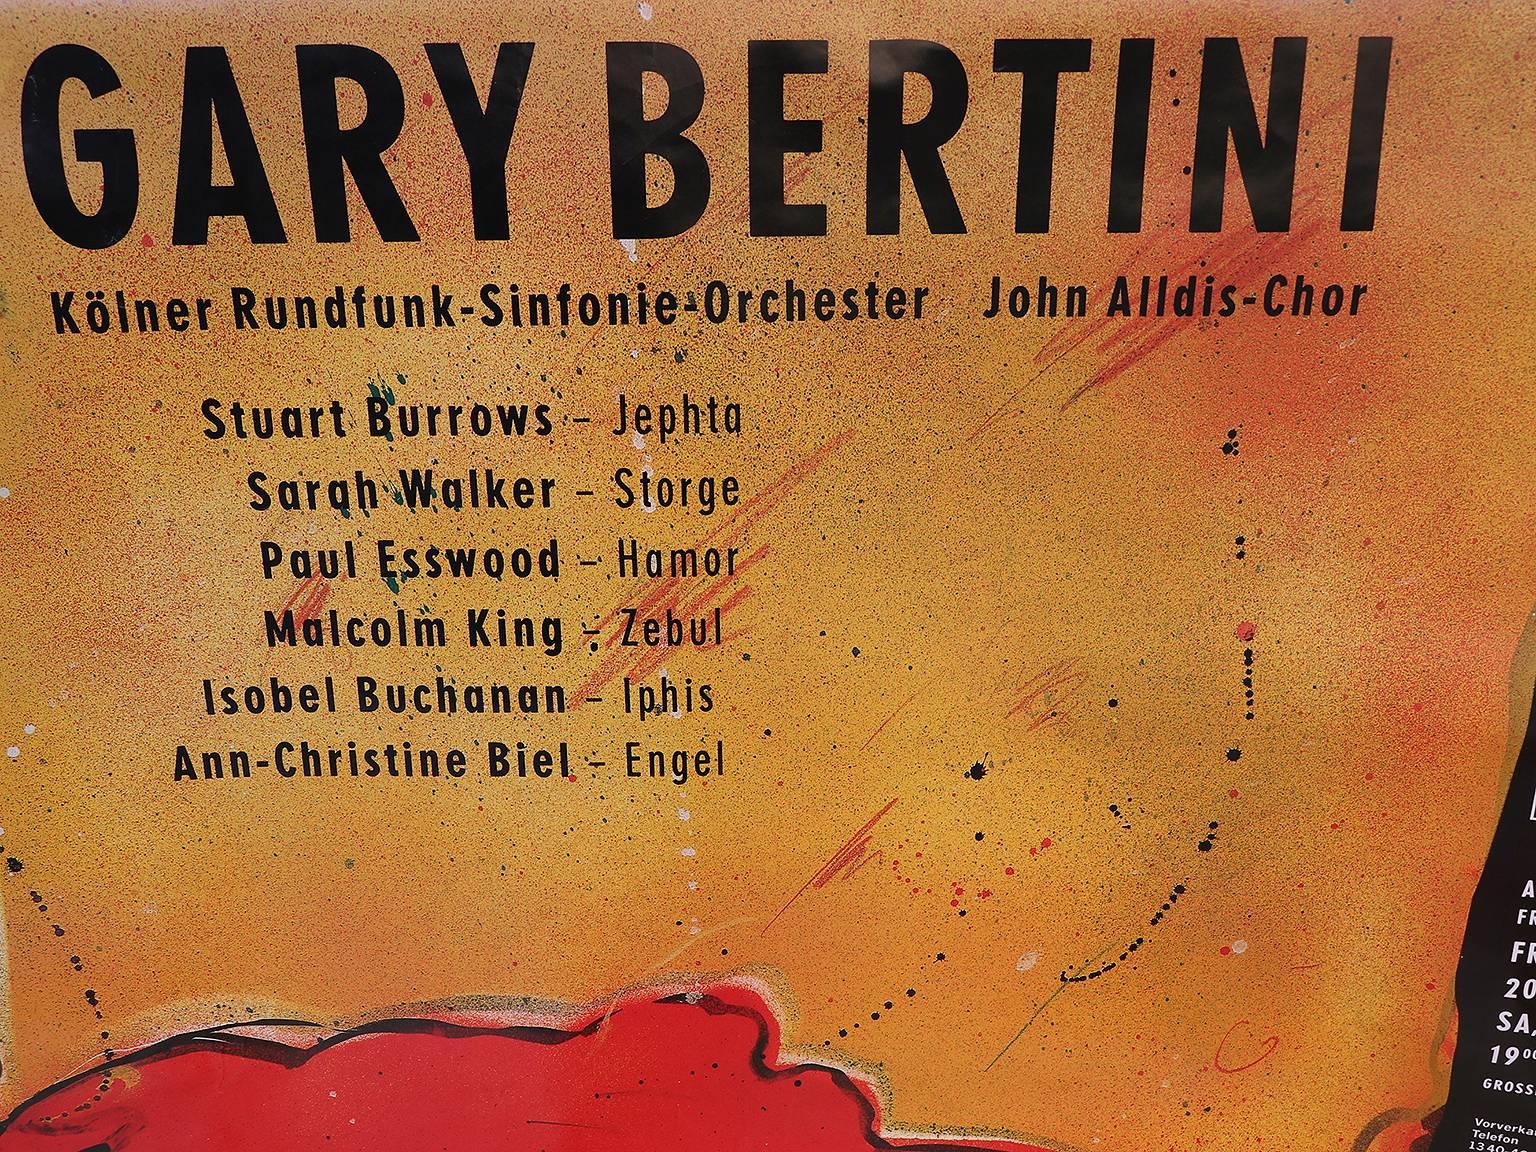 Gary Bertini - Jephta, affiche de concert 1985 Alte Oper Frankfurt, Allemagne.
Non encadré, n'a pas été plié, enroulé.
Taille : 118 x 84 cm.
Deux pièces disponibles. 